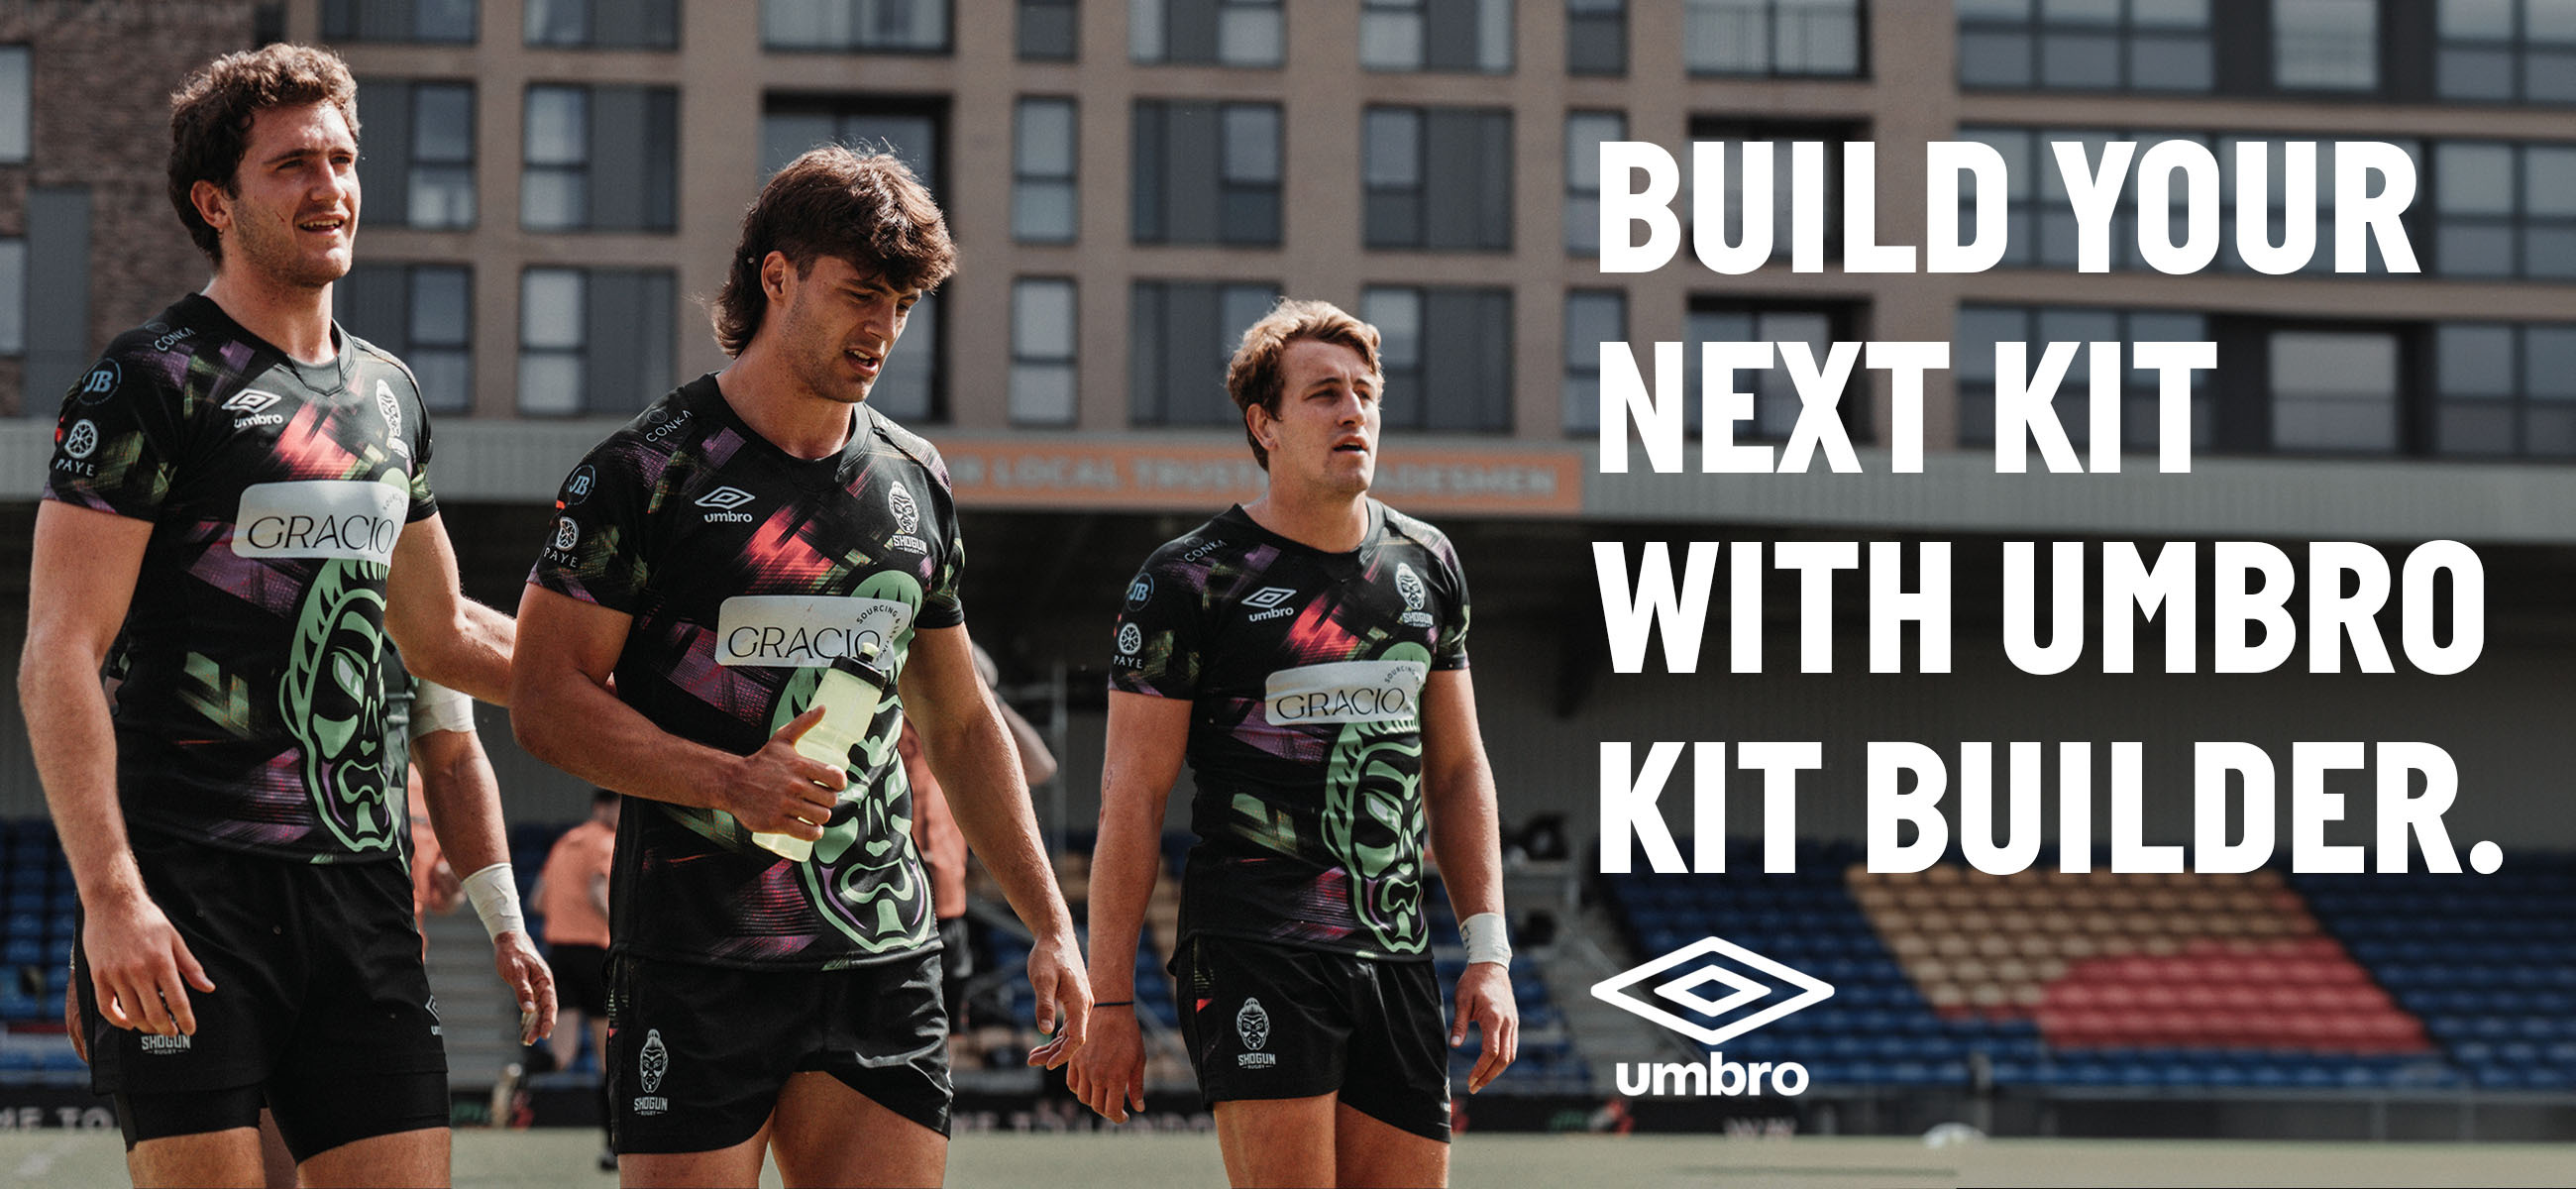 Enter Umbro Kit Builder